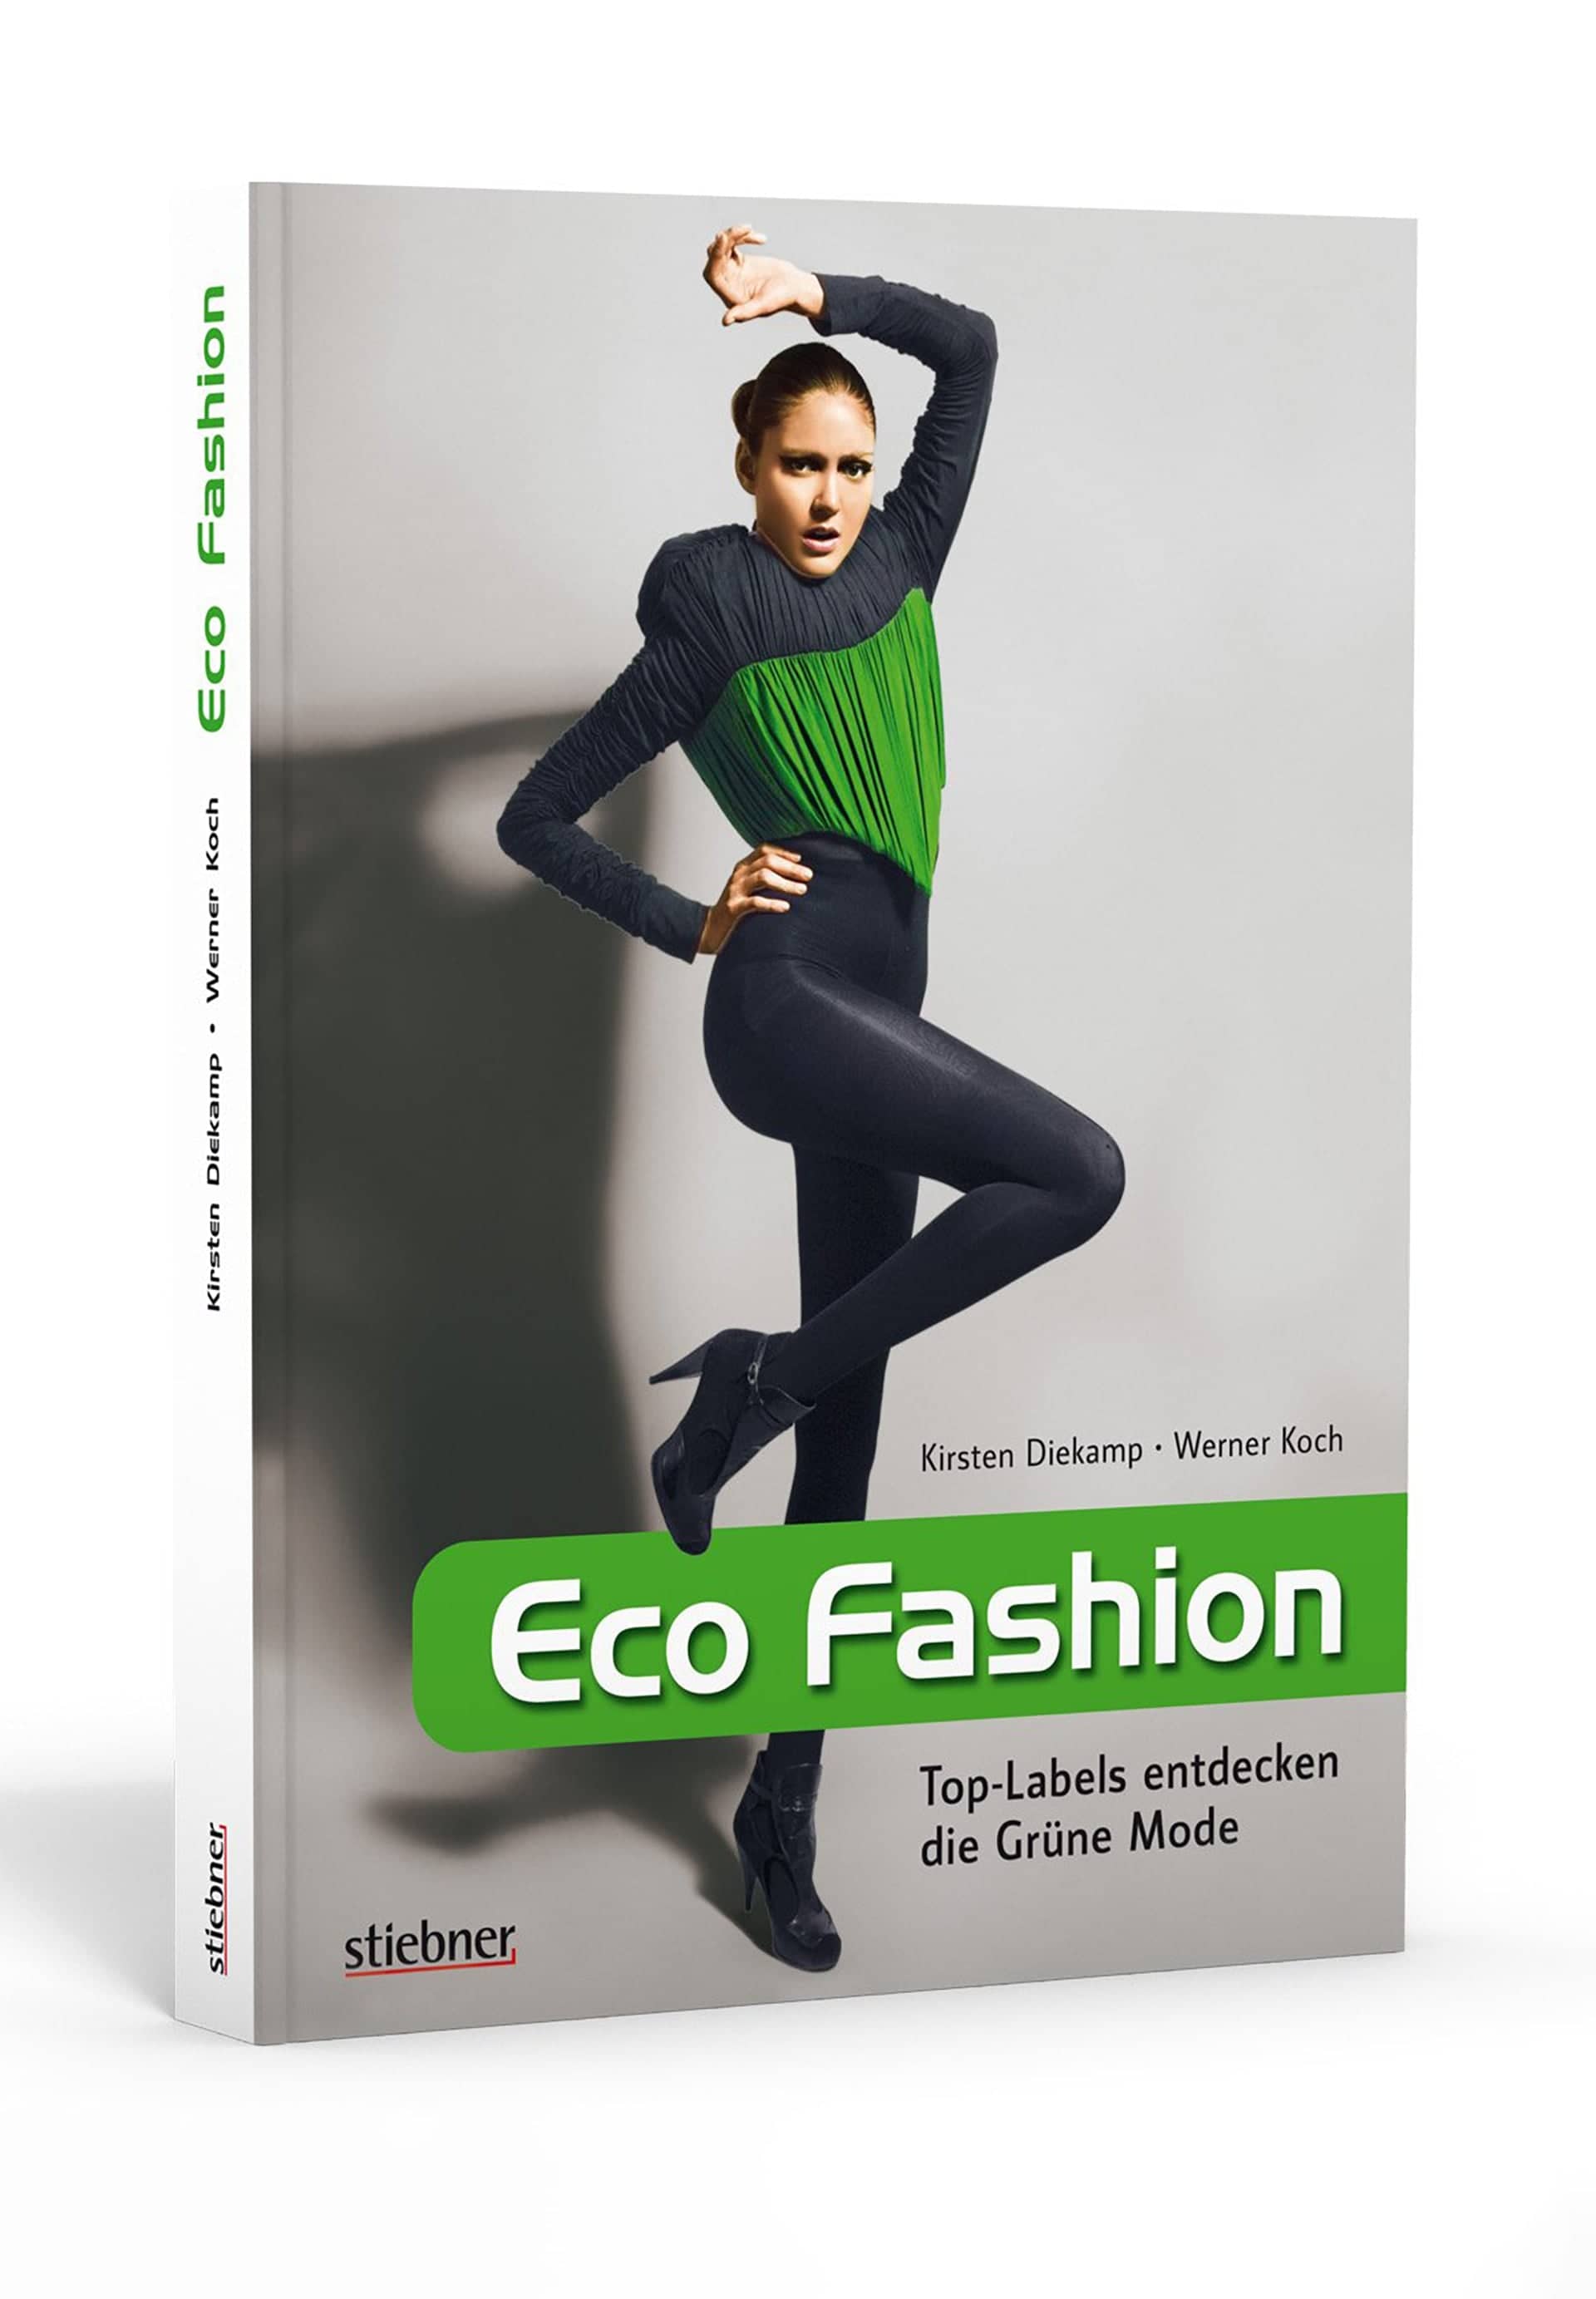 FOGS MAGAZIN Book - Eco Fashion